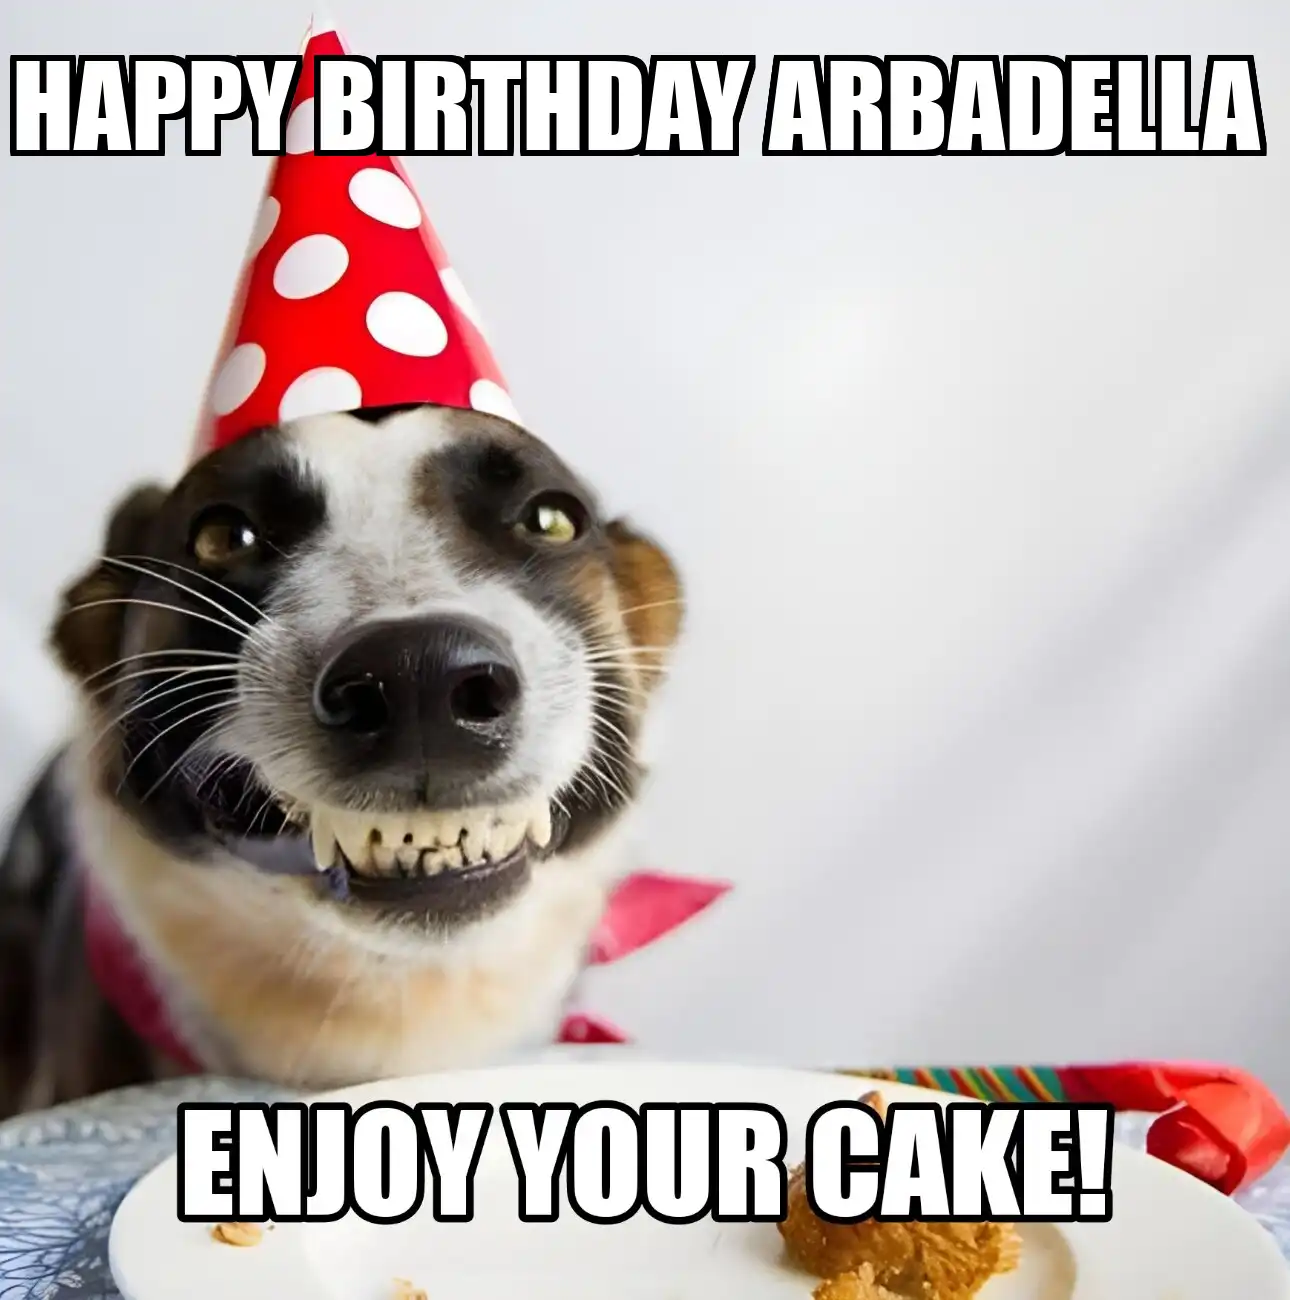 Happy Birthday Arbadella Enjoy Your Cake Dog Meme